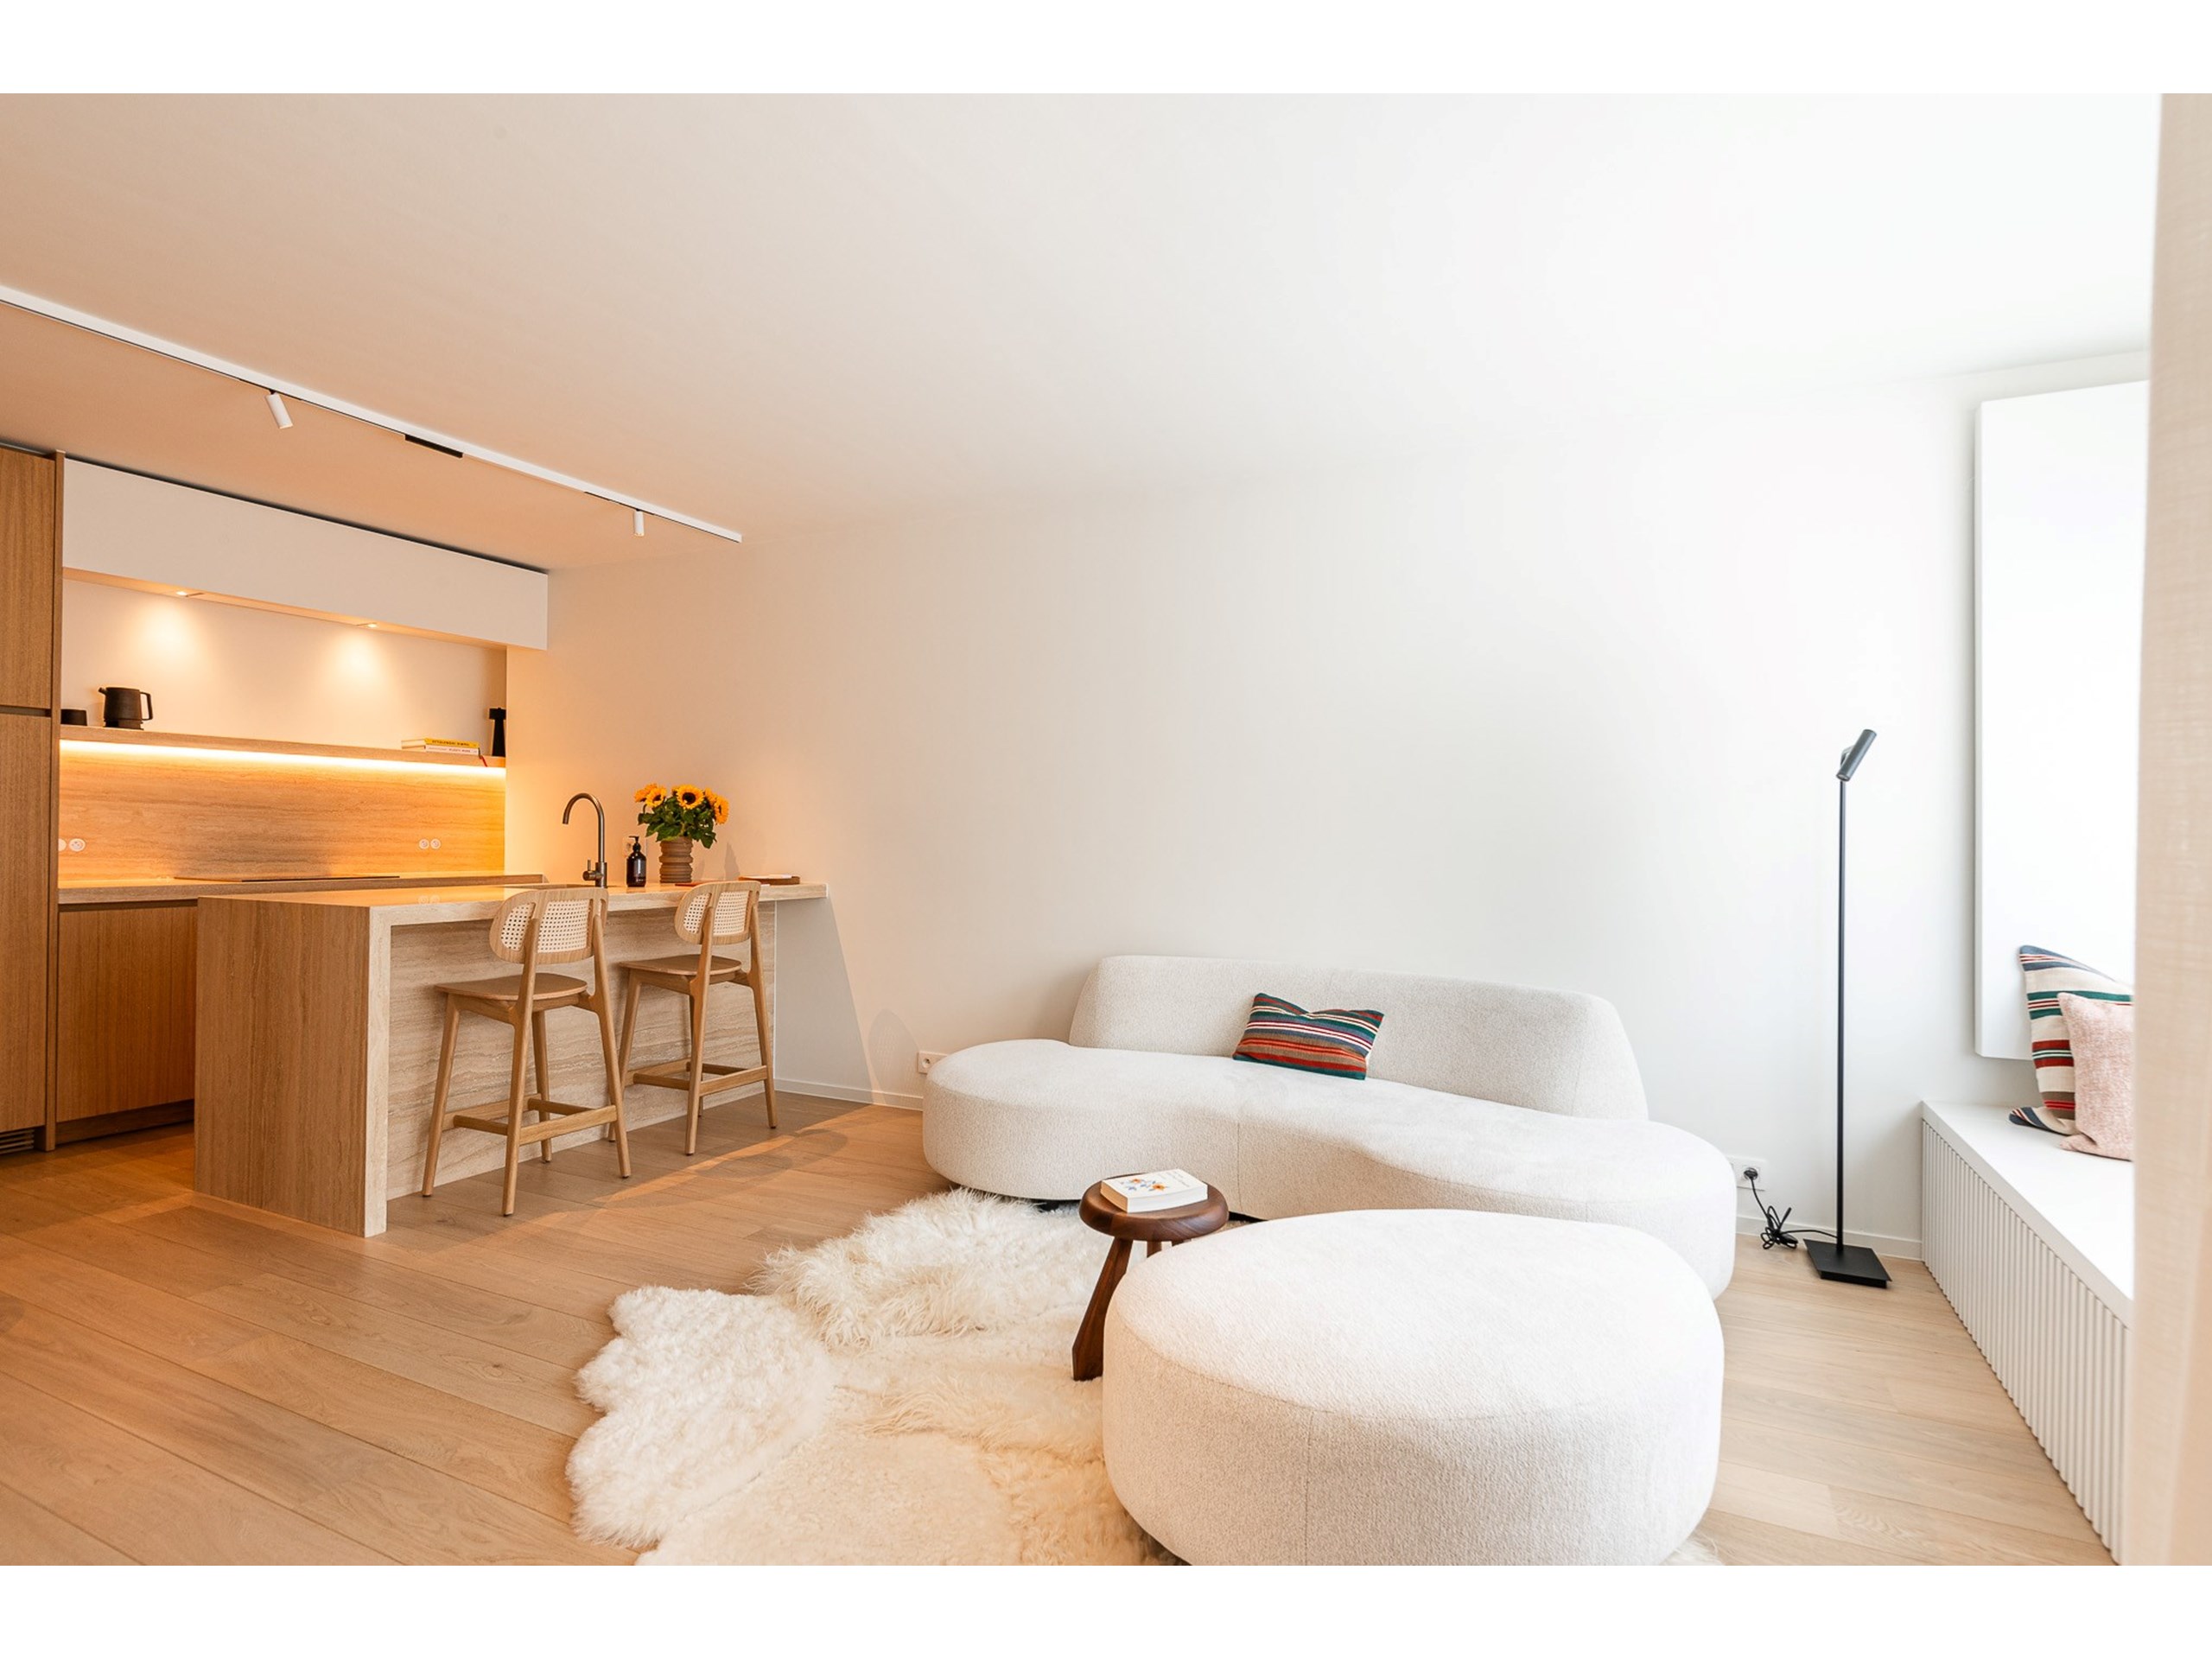 Volledig gerenoveerd appartement afgewerkt met kwalitatieve materialen en met zijdelings zeezicht. 